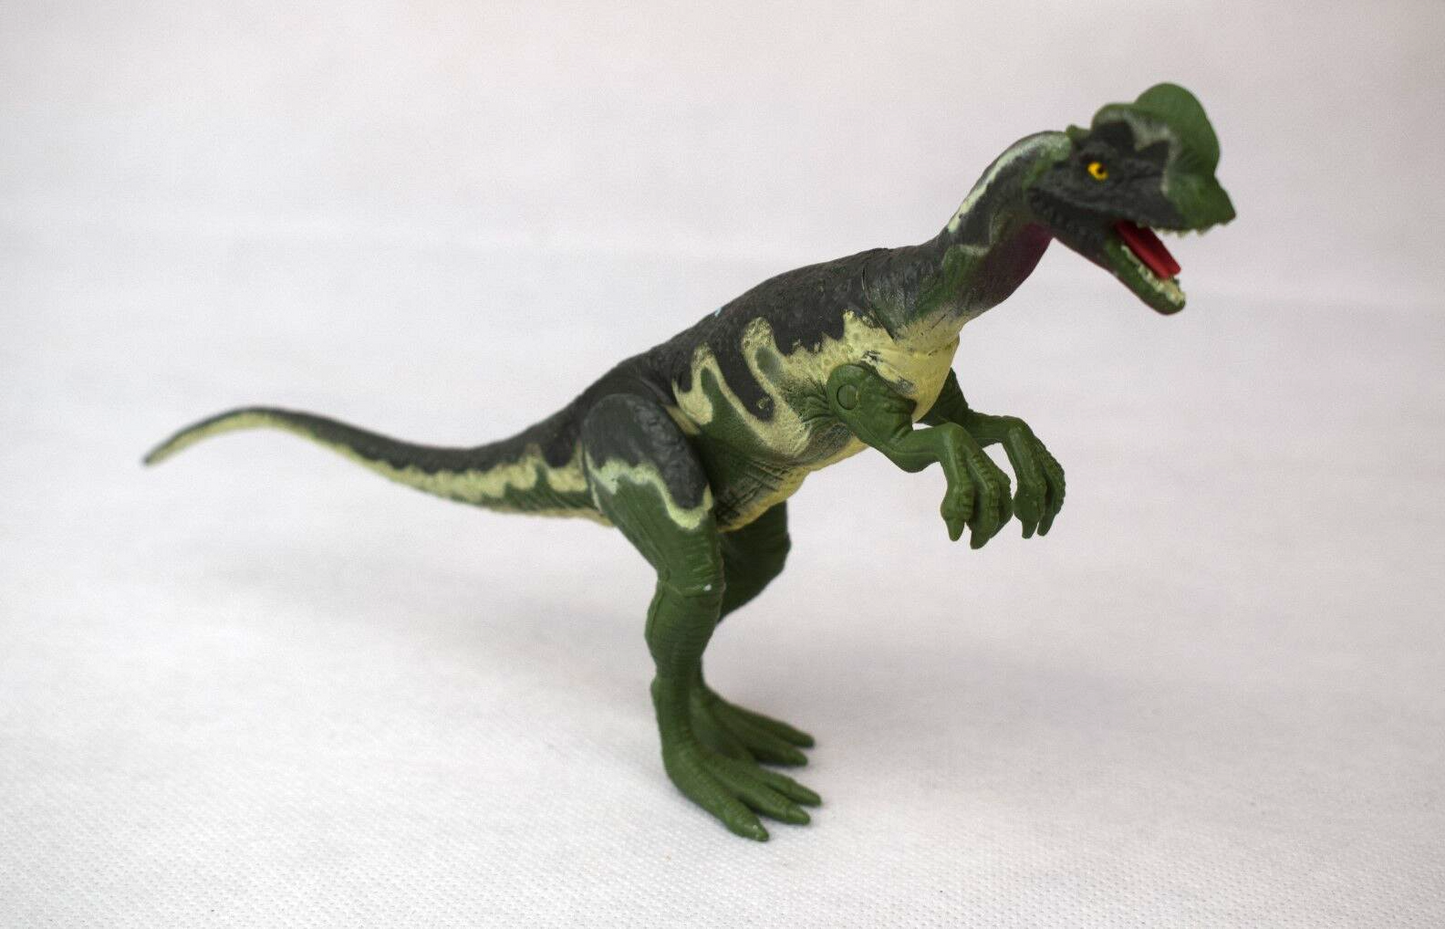 Jurassic Park Dilophosaurus dinosaur